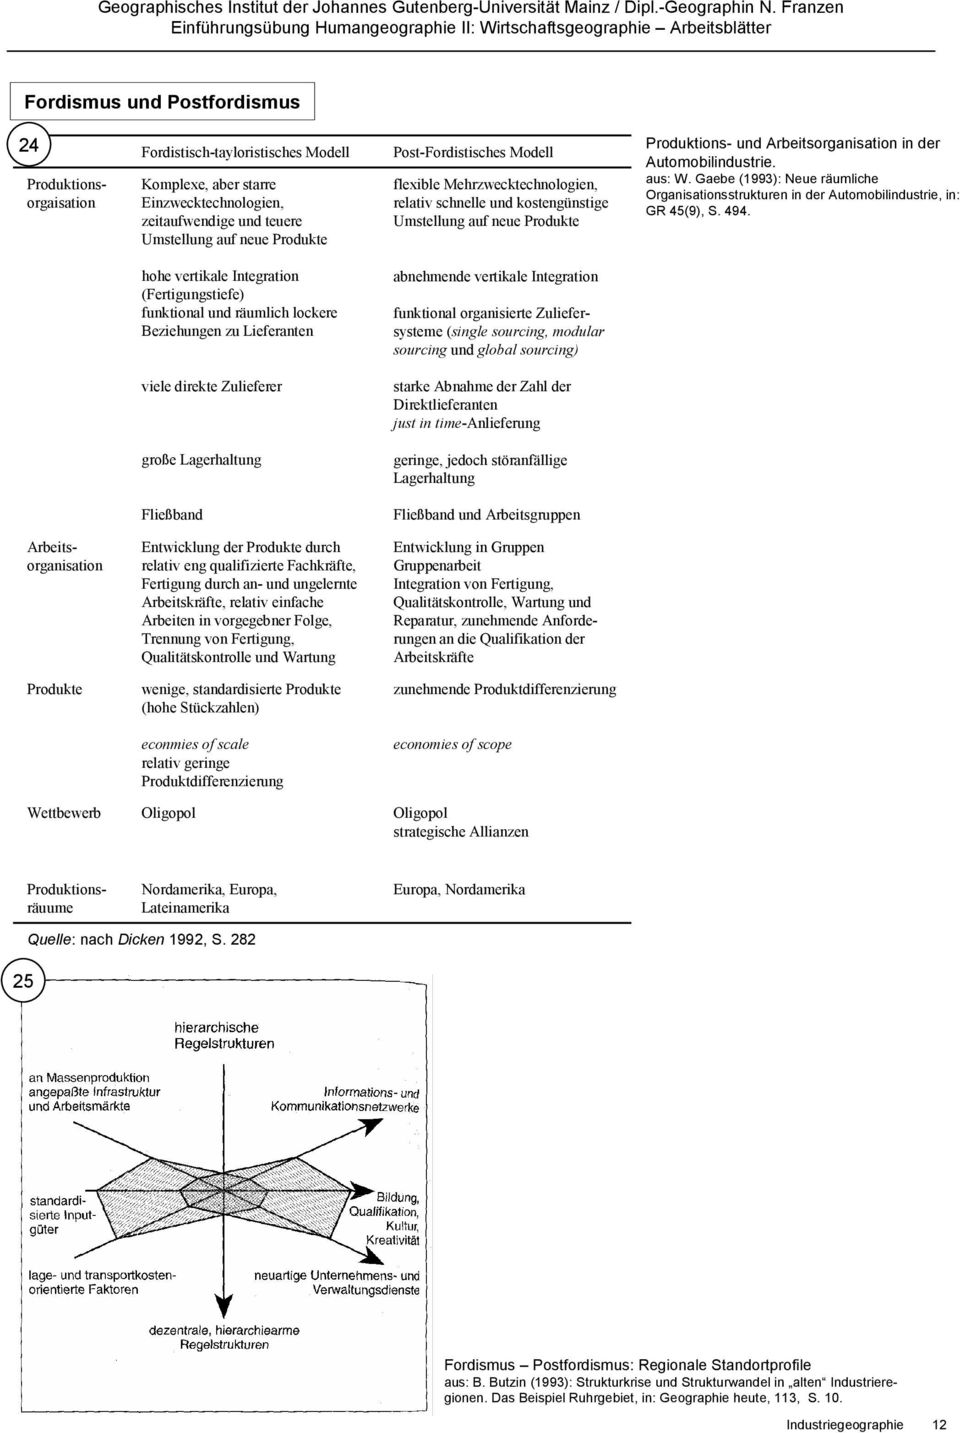 Gaebe (1993): Neue räumliche Organisationsstrukturen in der Automobilindustrie, in: GR 45(9), S. 494.